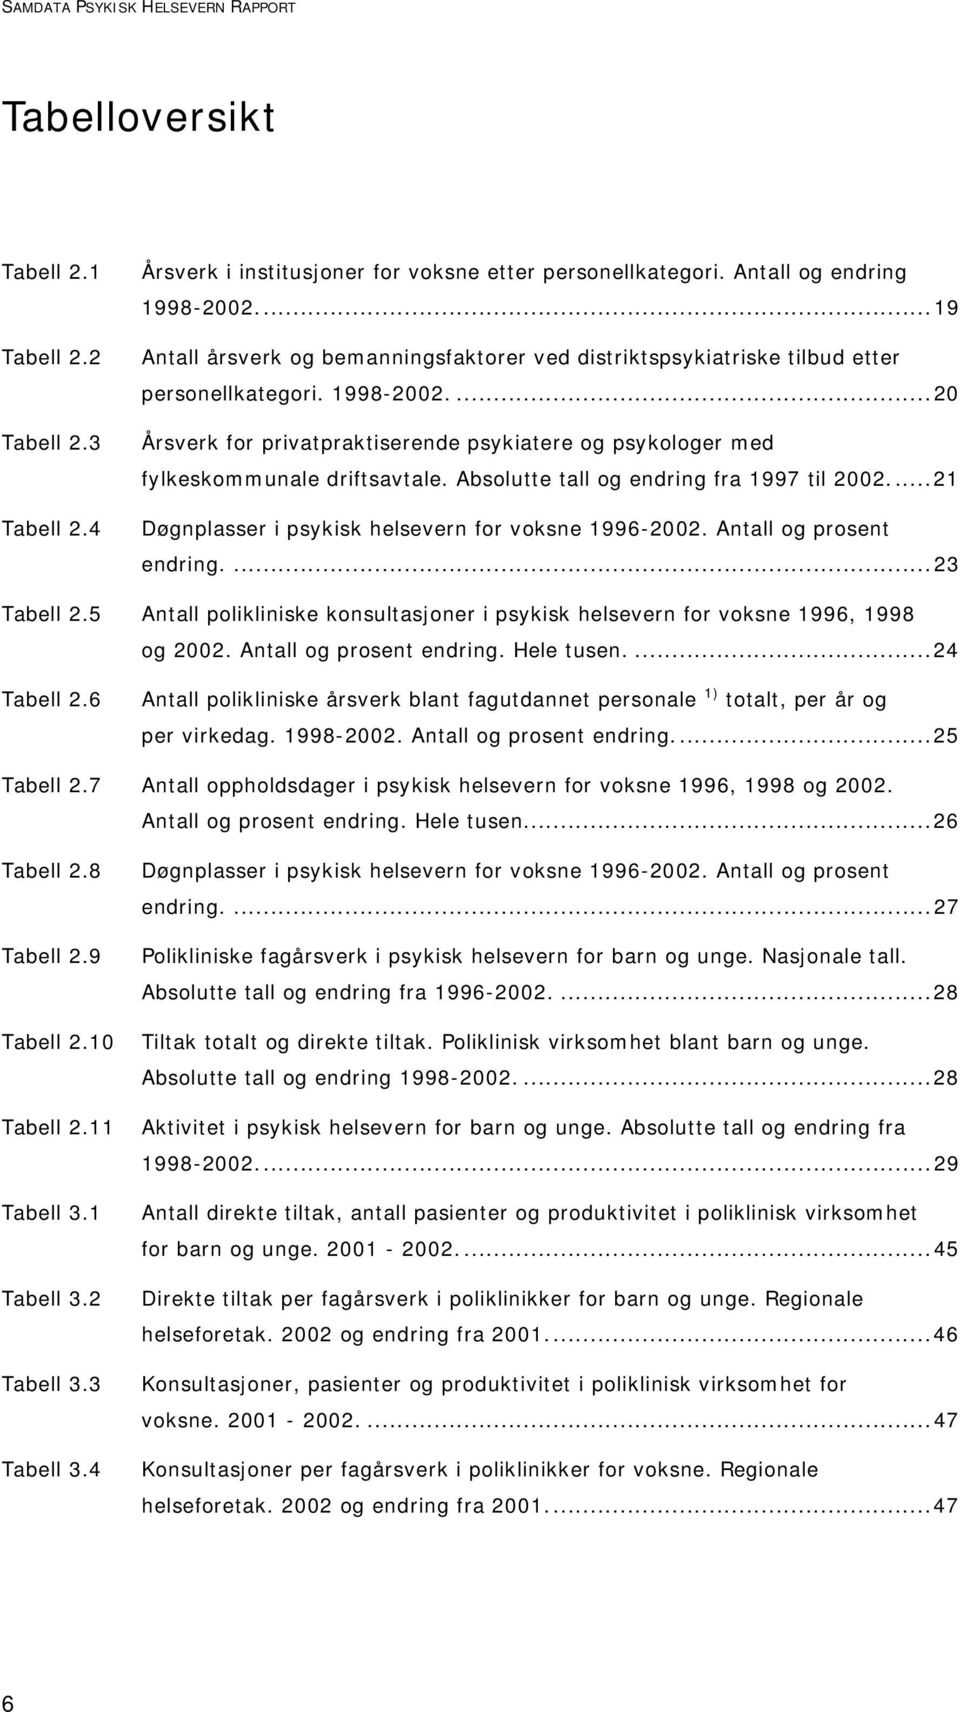 ...20 Årsverk for privatpraktiserende psykiatere og psykologer med fylkeskommunale driftsavtale. Absolutte tall og endring fra 1997 til 2002...21 Døgnplasser i psykisk helsevern for voksne 1996-2002.